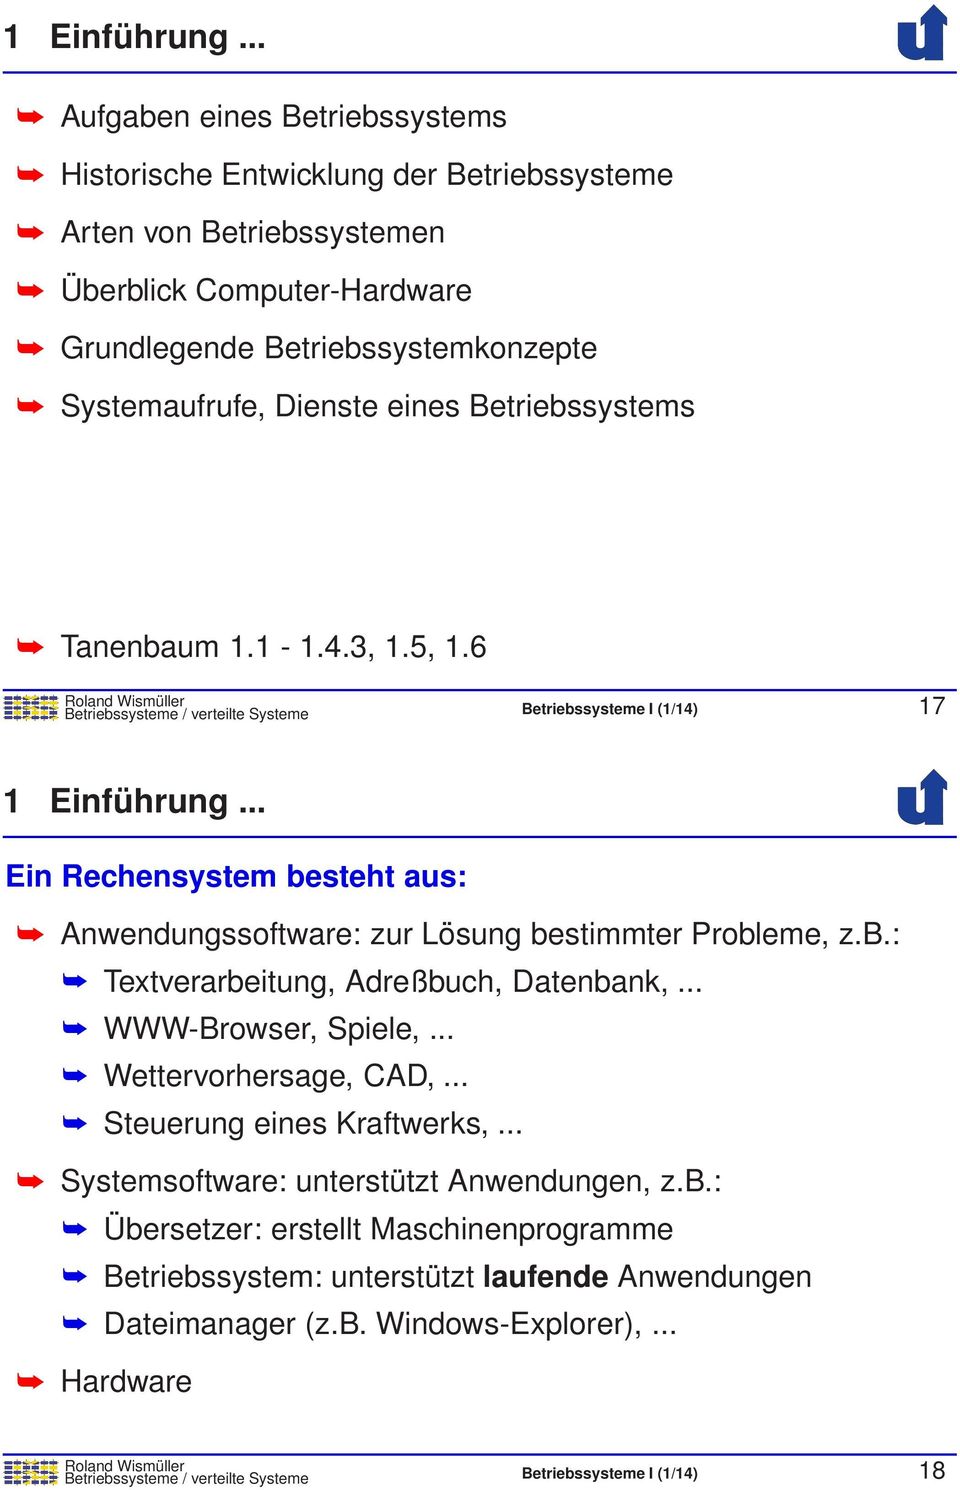 Betriebssystems Tanenbaum 1.1-1.4.3, 1.5, 1.6 Betriebssysteme / verteilte Systeme Betriebssysteme I (1/14) 17 .. Ein Rechensystem besteht aus: Anwendungssoftware: zur Lösung bestimmter Probleme, z.b.: Textverarbeitung, Adreßbuch, Datenbank,.